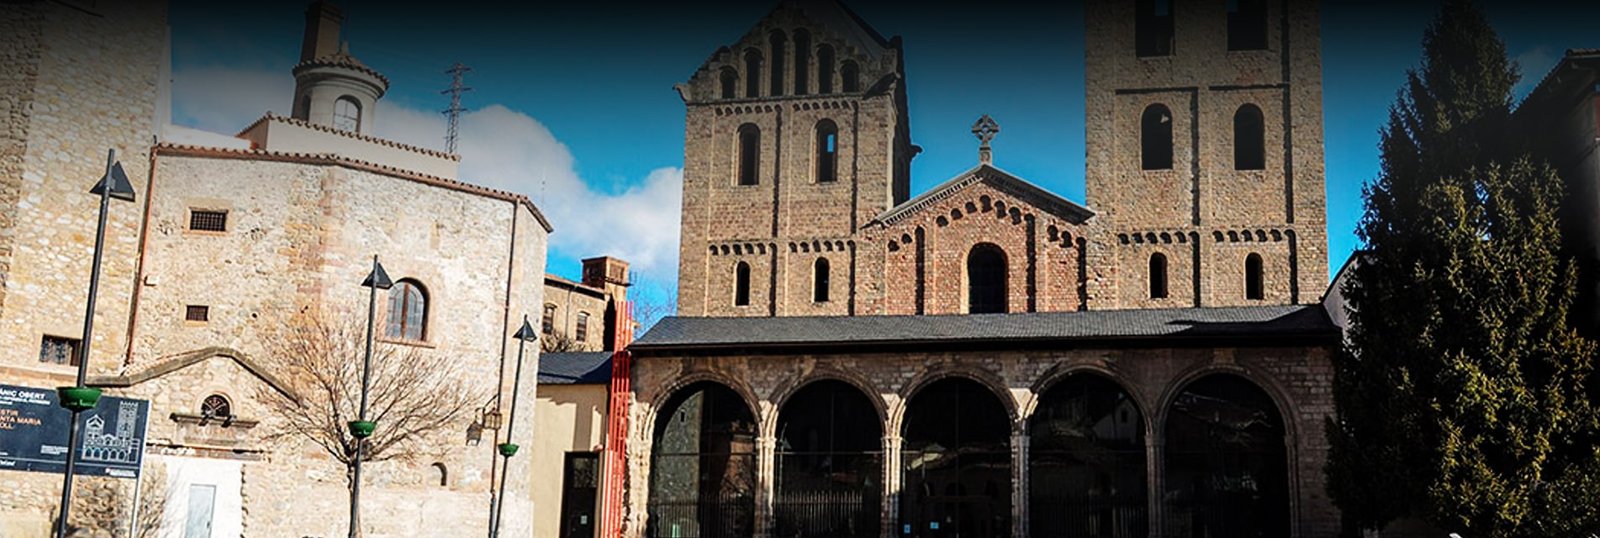 Monasterio de Santa Maria de Ripoll header - Origenes de Europa